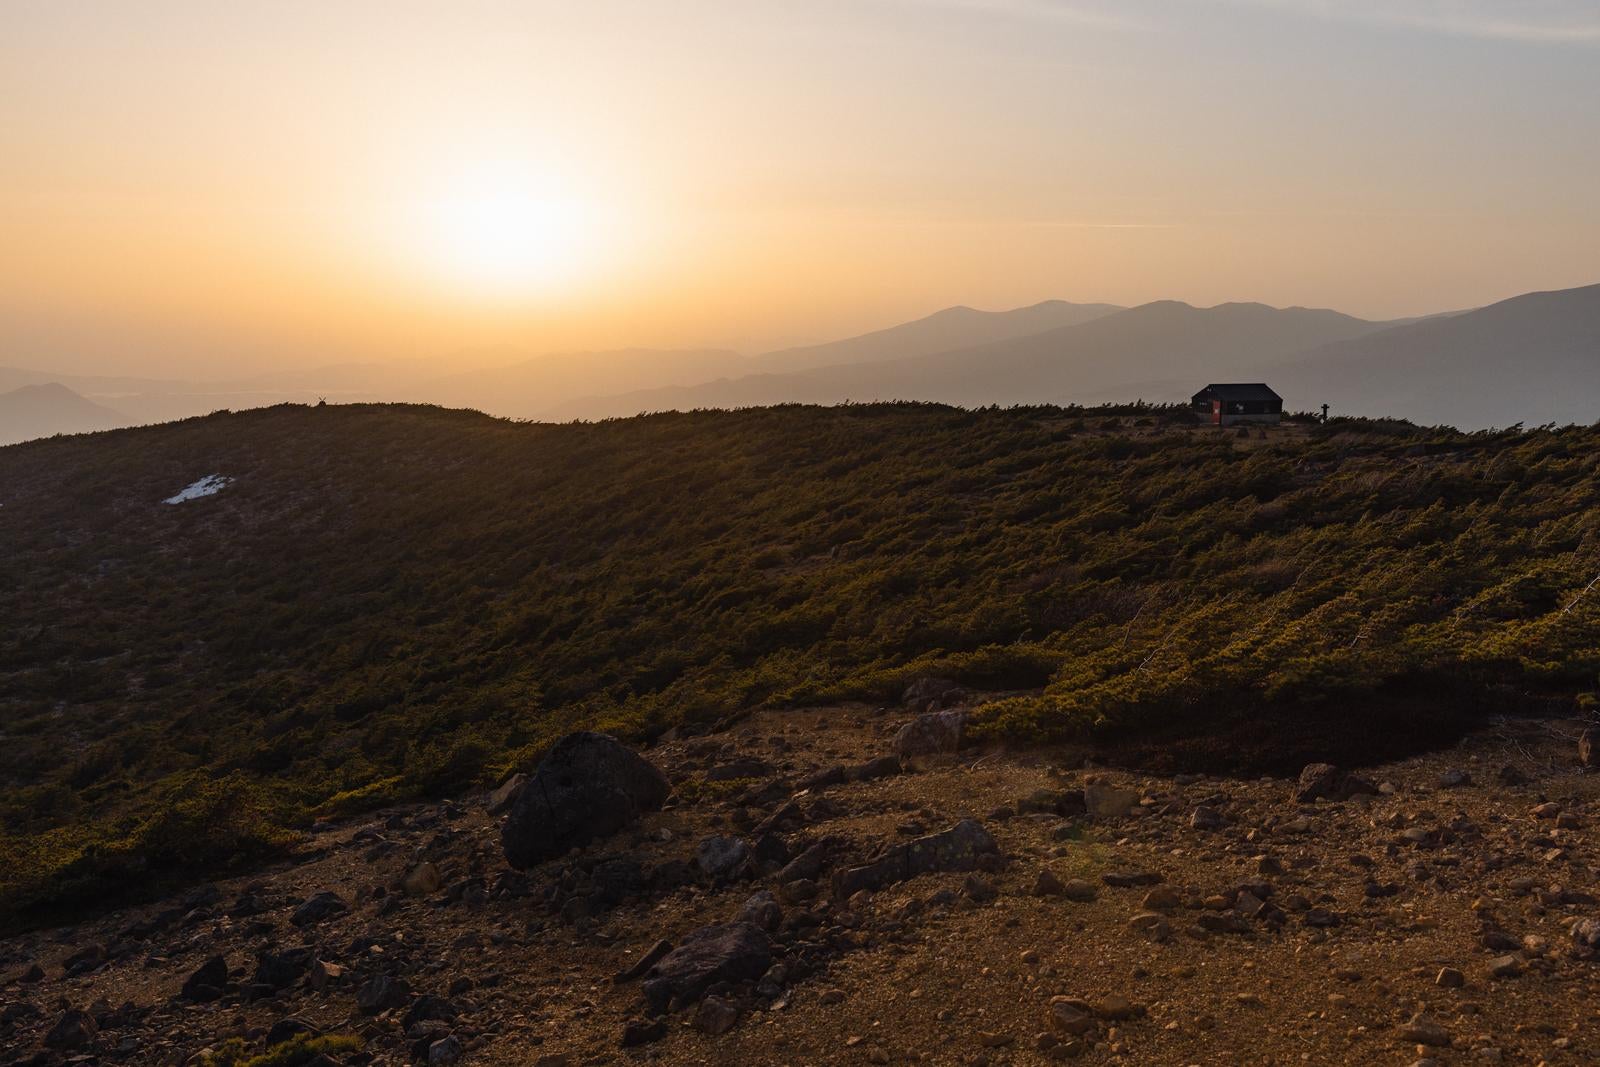 「夕焼けの鉄山避難小屋、夕日が作り出す山の美」の写真